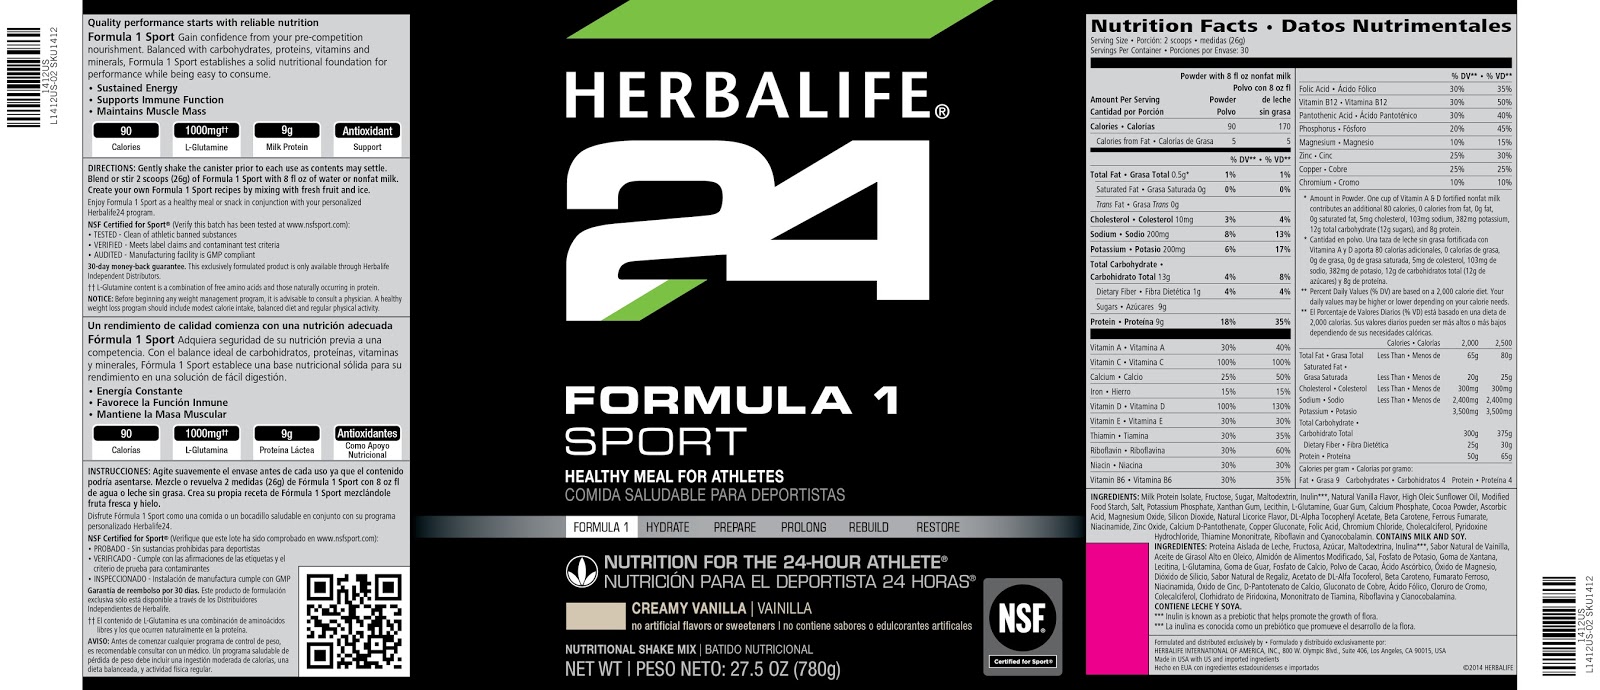 Herbalife24 Nutrición Atletas 24 Horas: Formula 1 sport ...